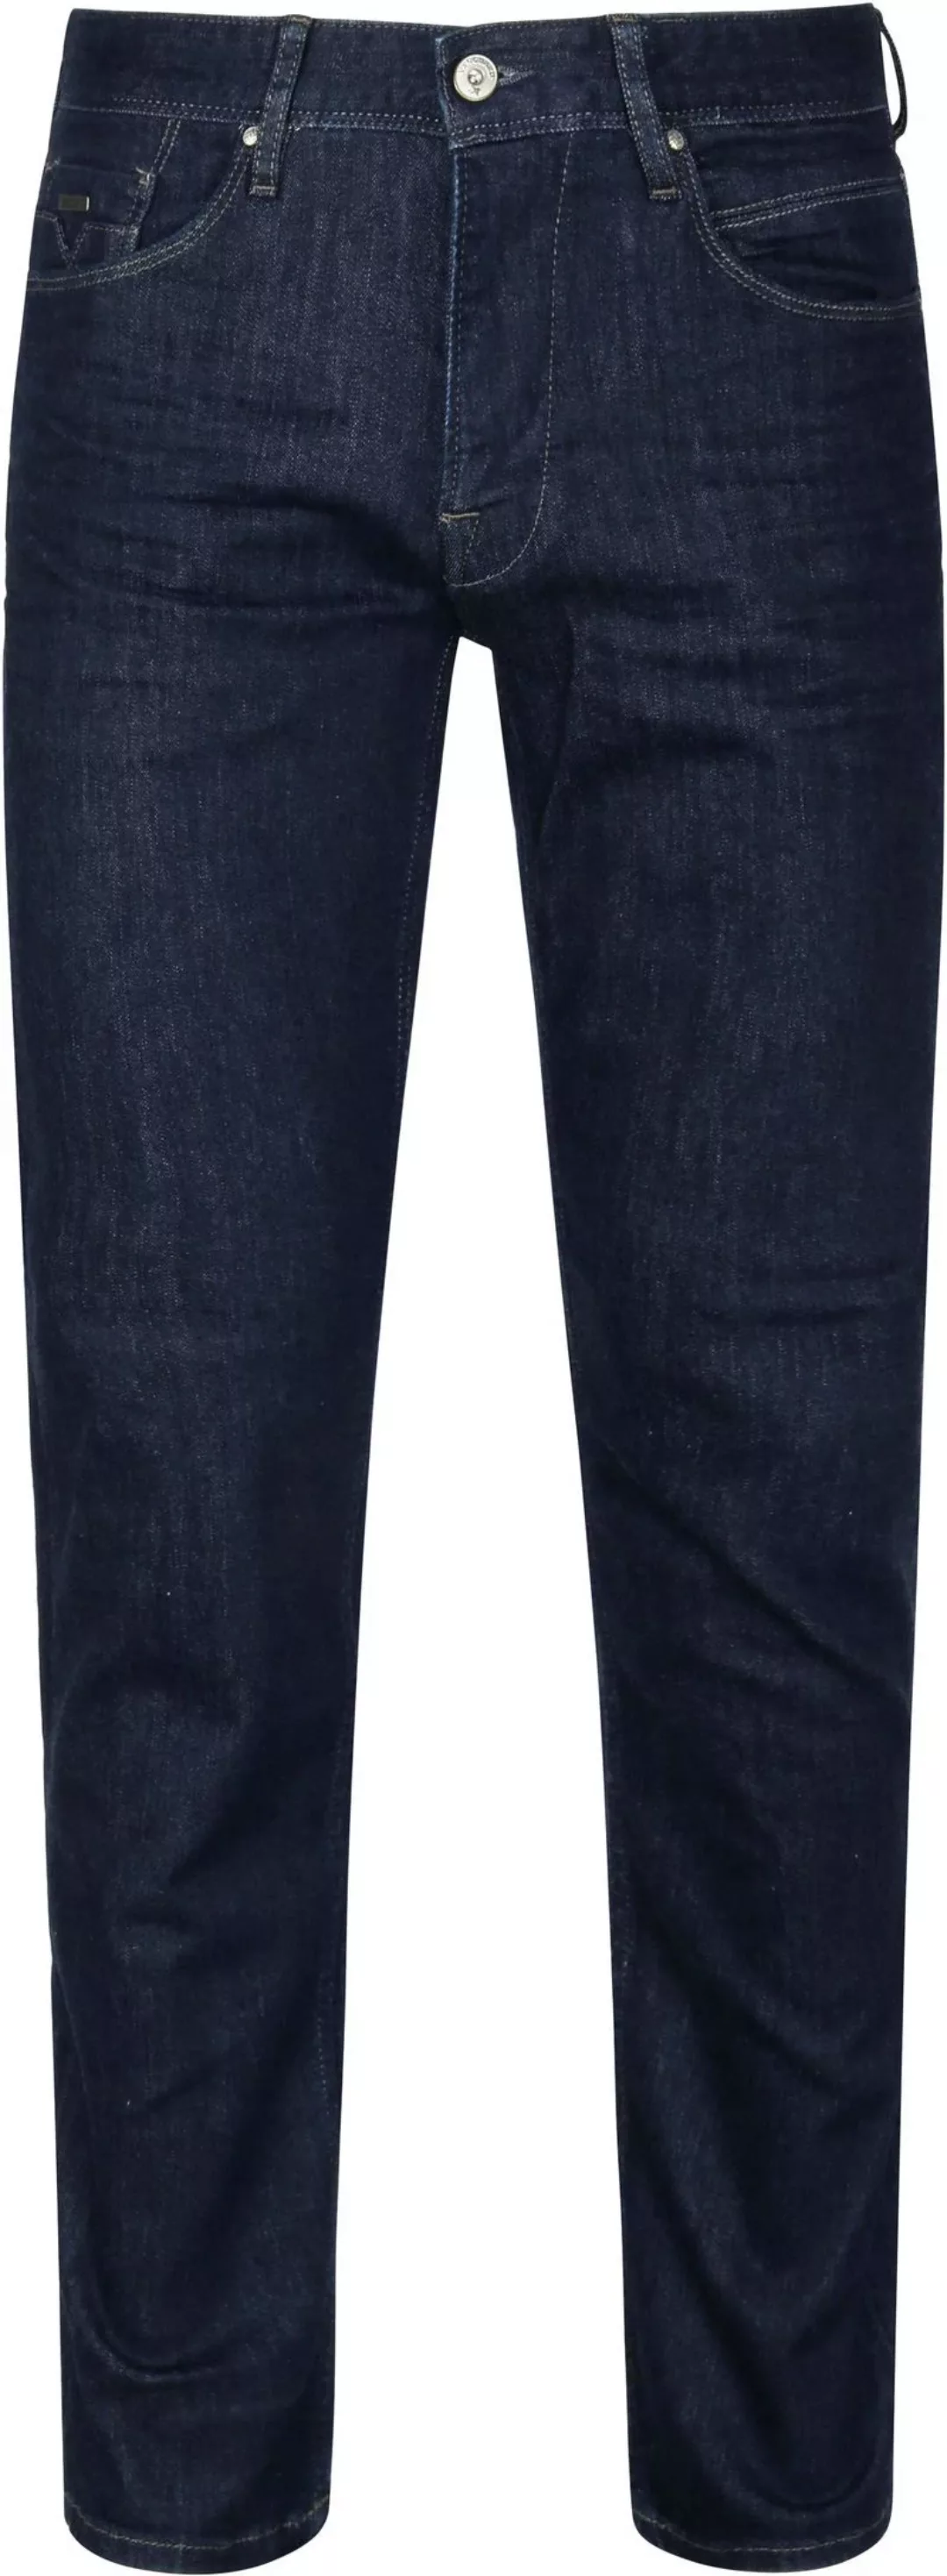 Vanguard Jeans V7 Rider Dunkelblau - Größe W 30 - L 32 günstig online kaufen